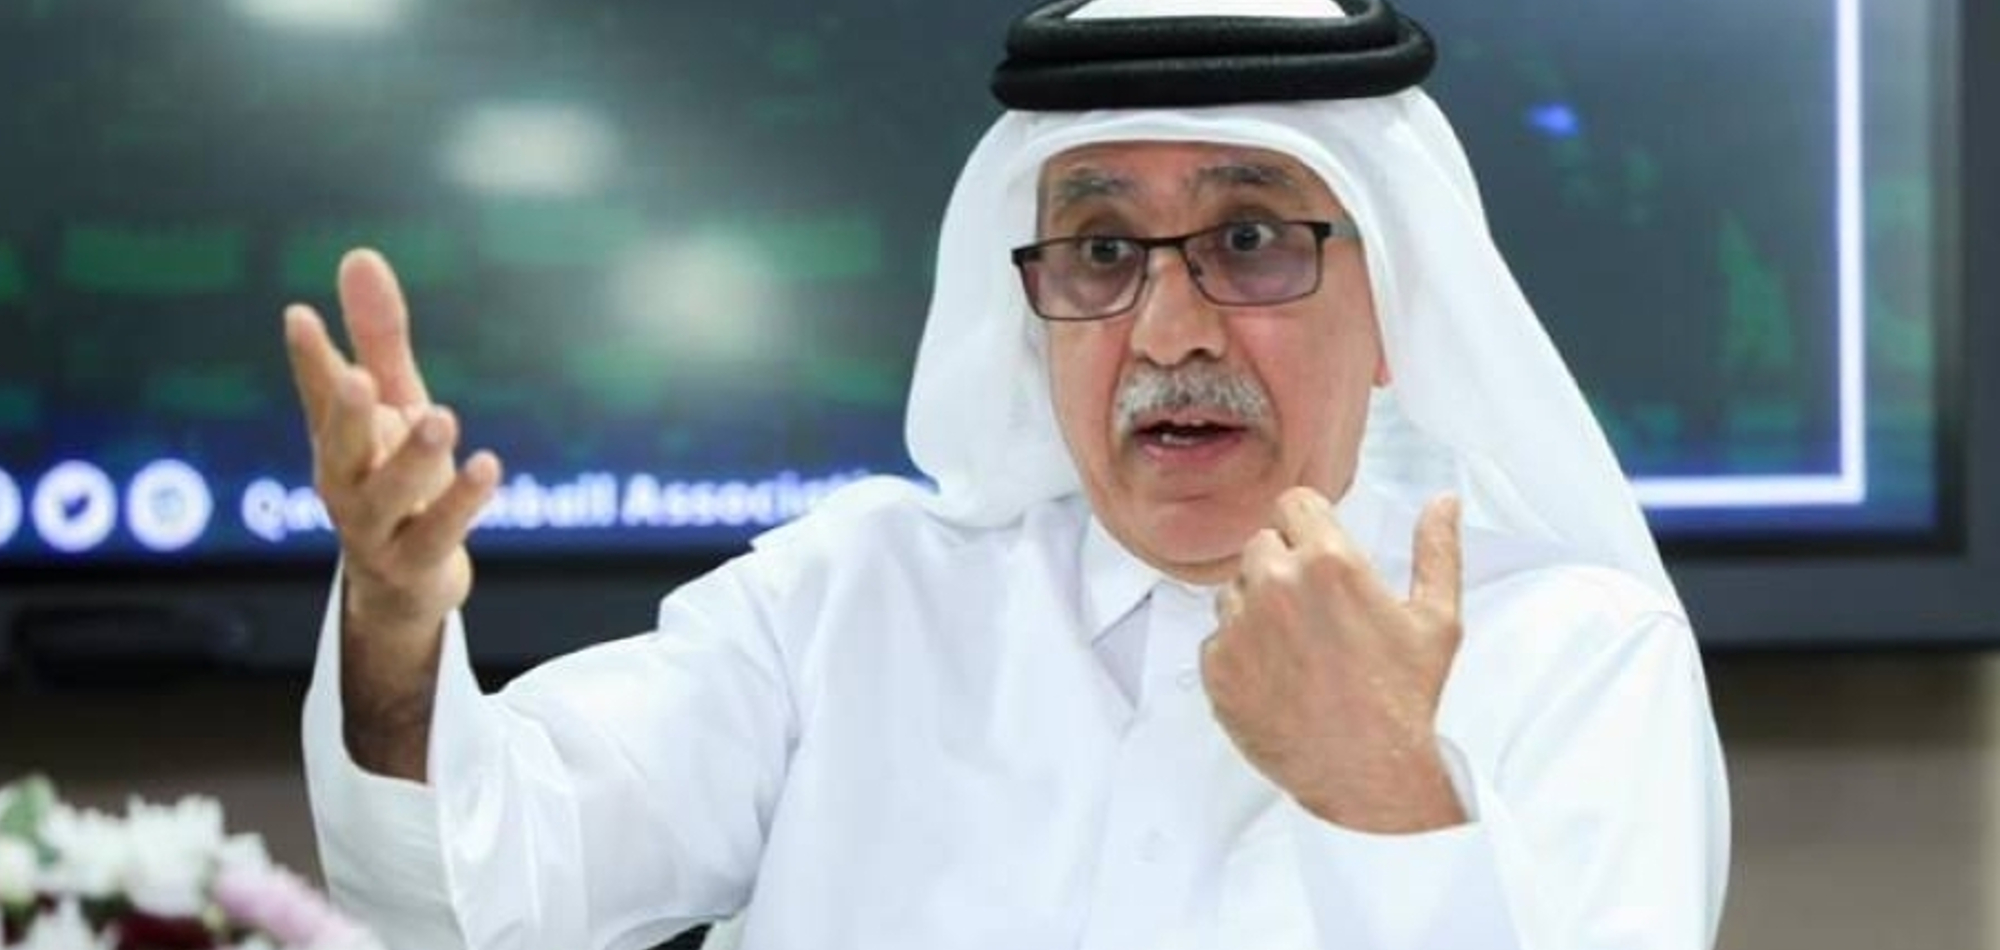  السيد أحمد الشعبي رئيس الاتحاد القطري لكرة اليد